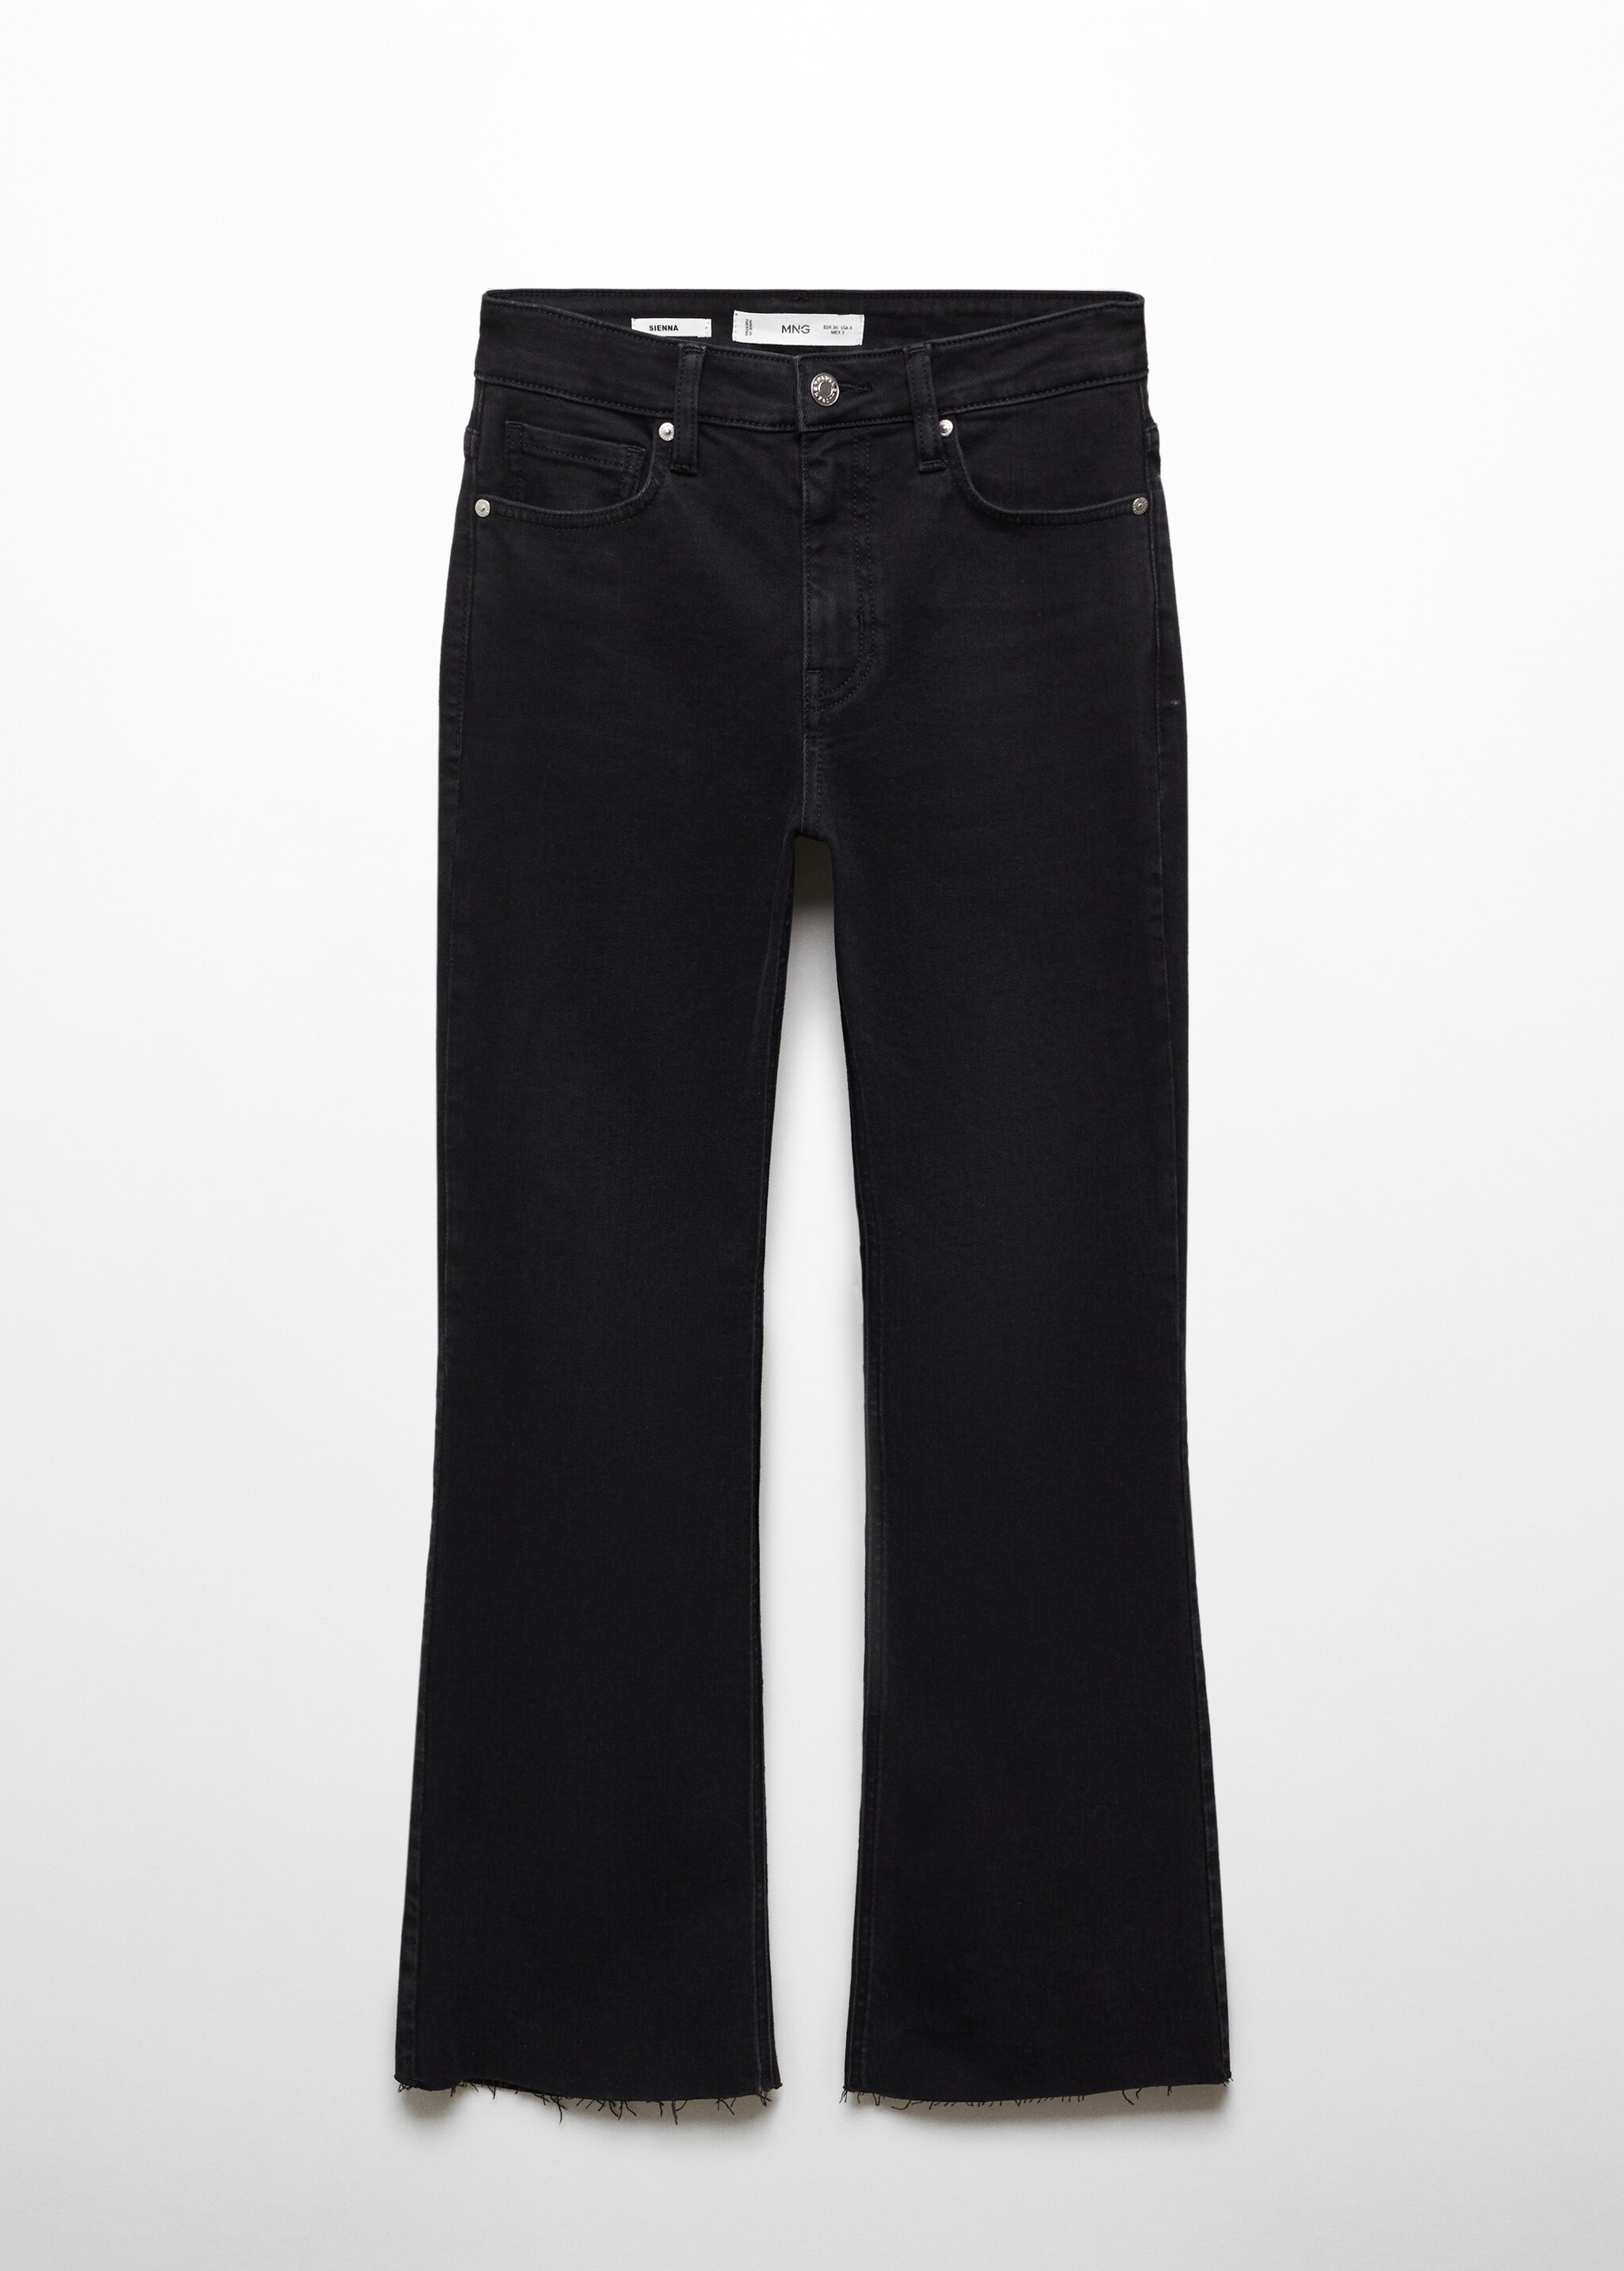 Укороченные джинсы flare - Изделие без модели